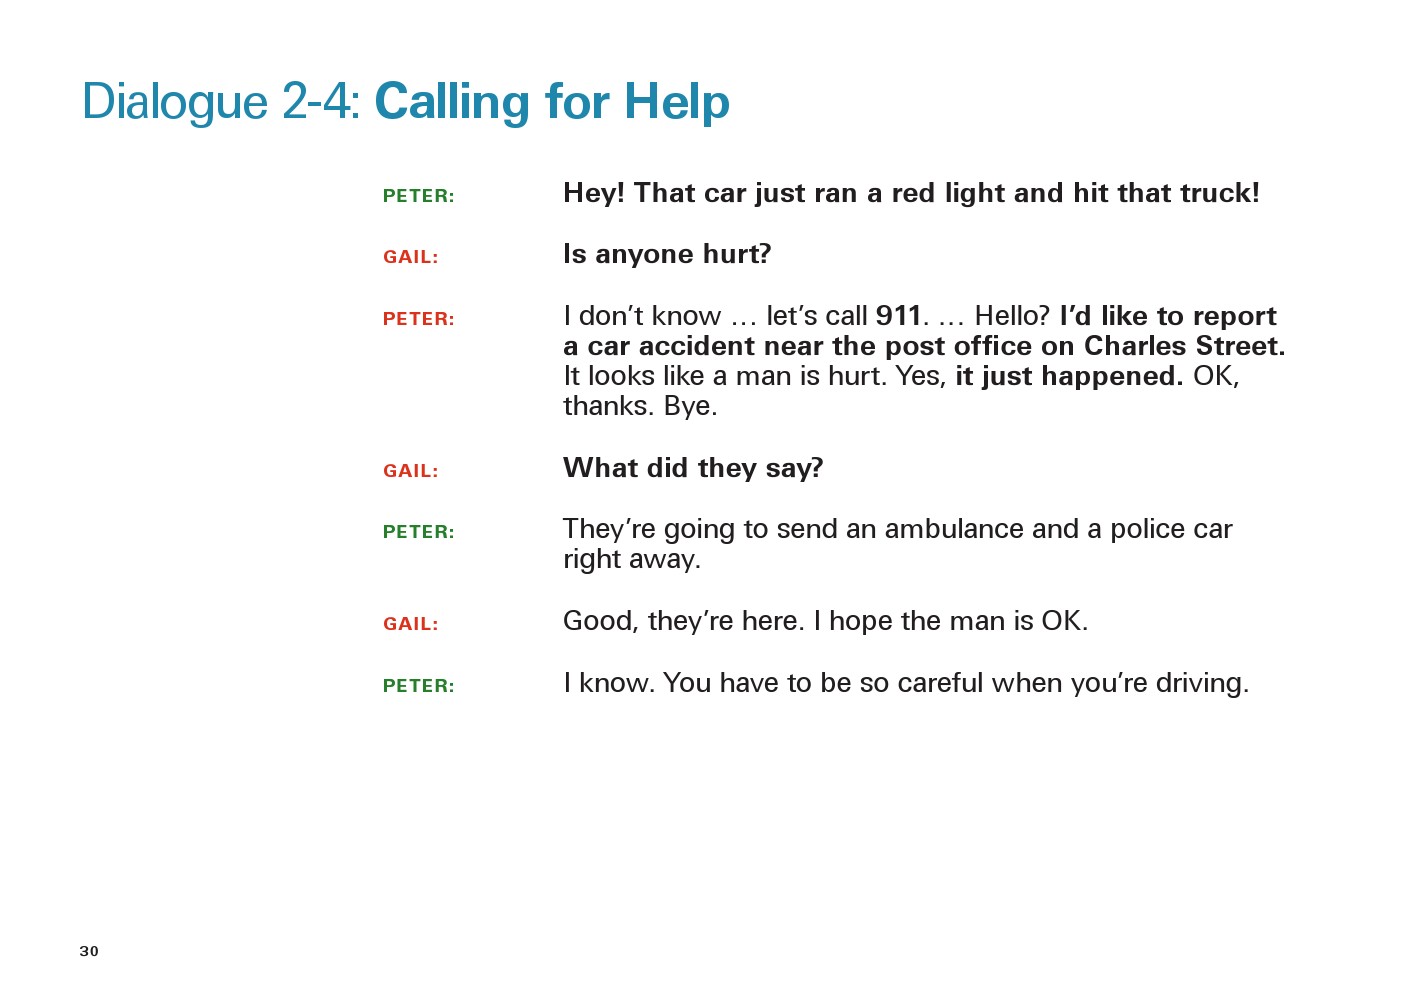 یادگیری انگلیسی آمریکایی-مکالمات و دیالوگ های روزمره- مکالمه 4-2: درخواست کردن کمک از یک فرد(Dialogue 2-4: Calling for Help)